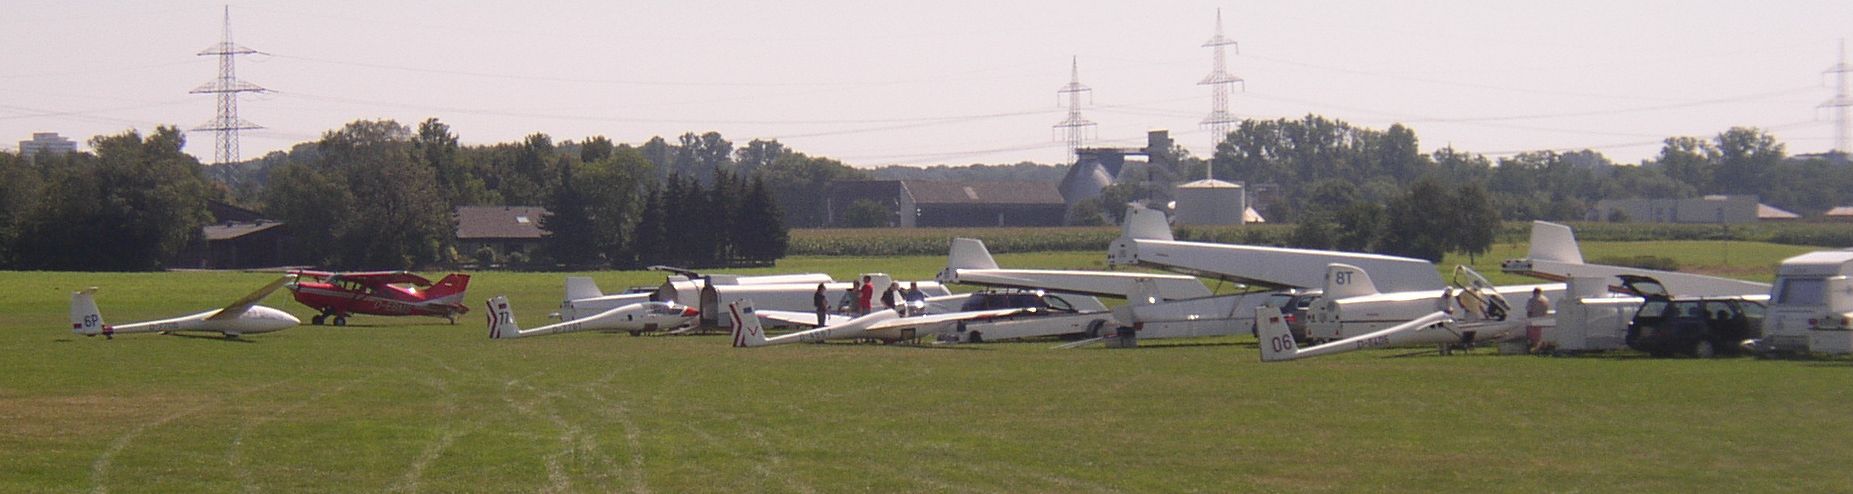 Flugzeuge auf dem Flugplatz Walldorf